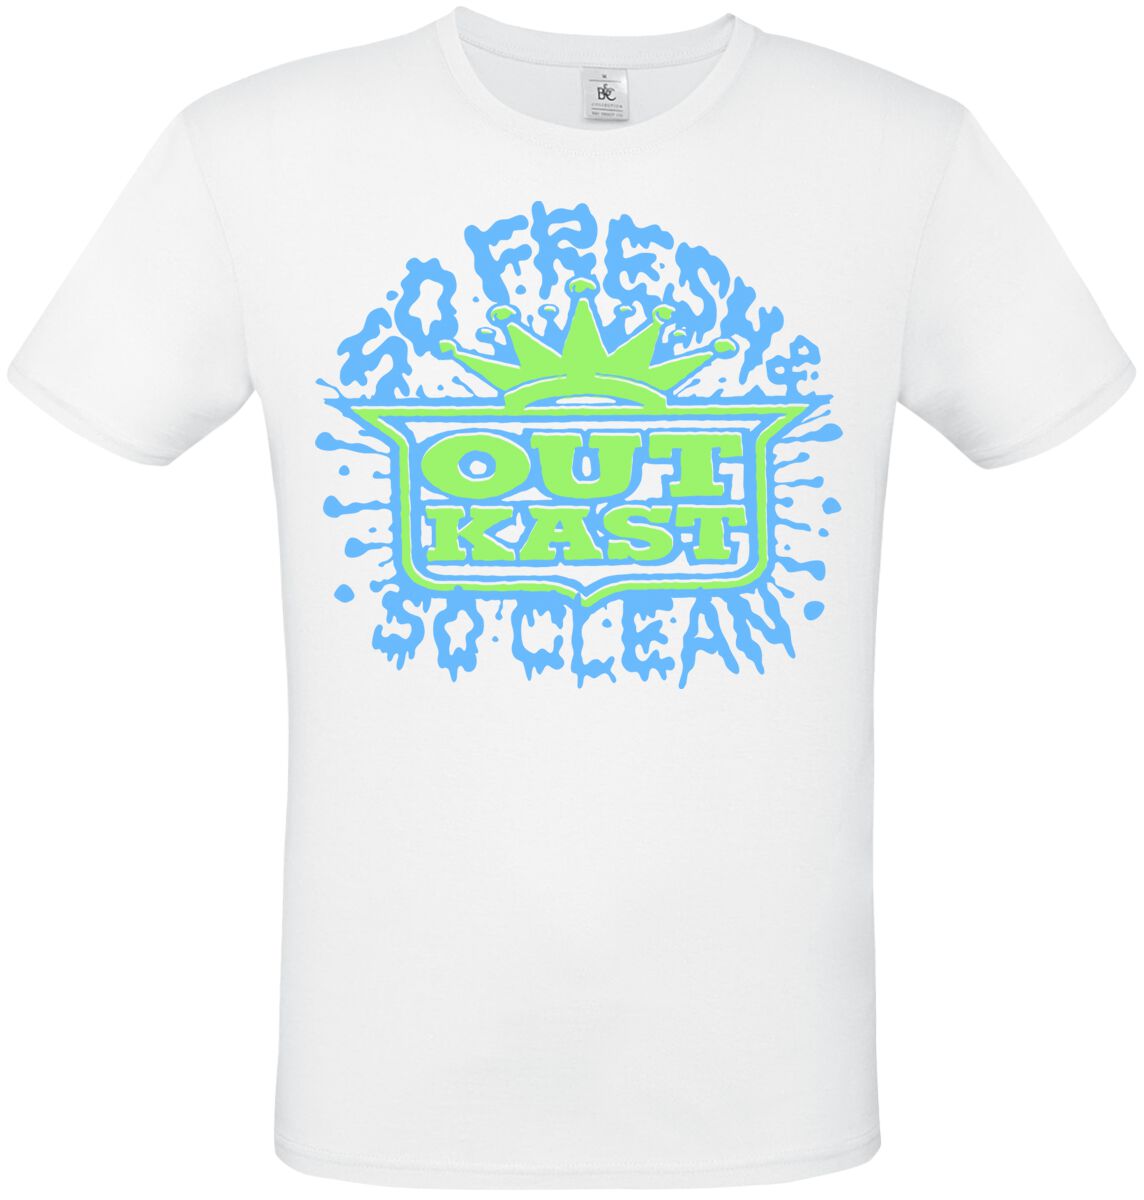 OutKast T-Shirt - So Fresh So Clean - S bis XL - für Männer - Größe S - weiß  - Lizenziertes Merchandise!